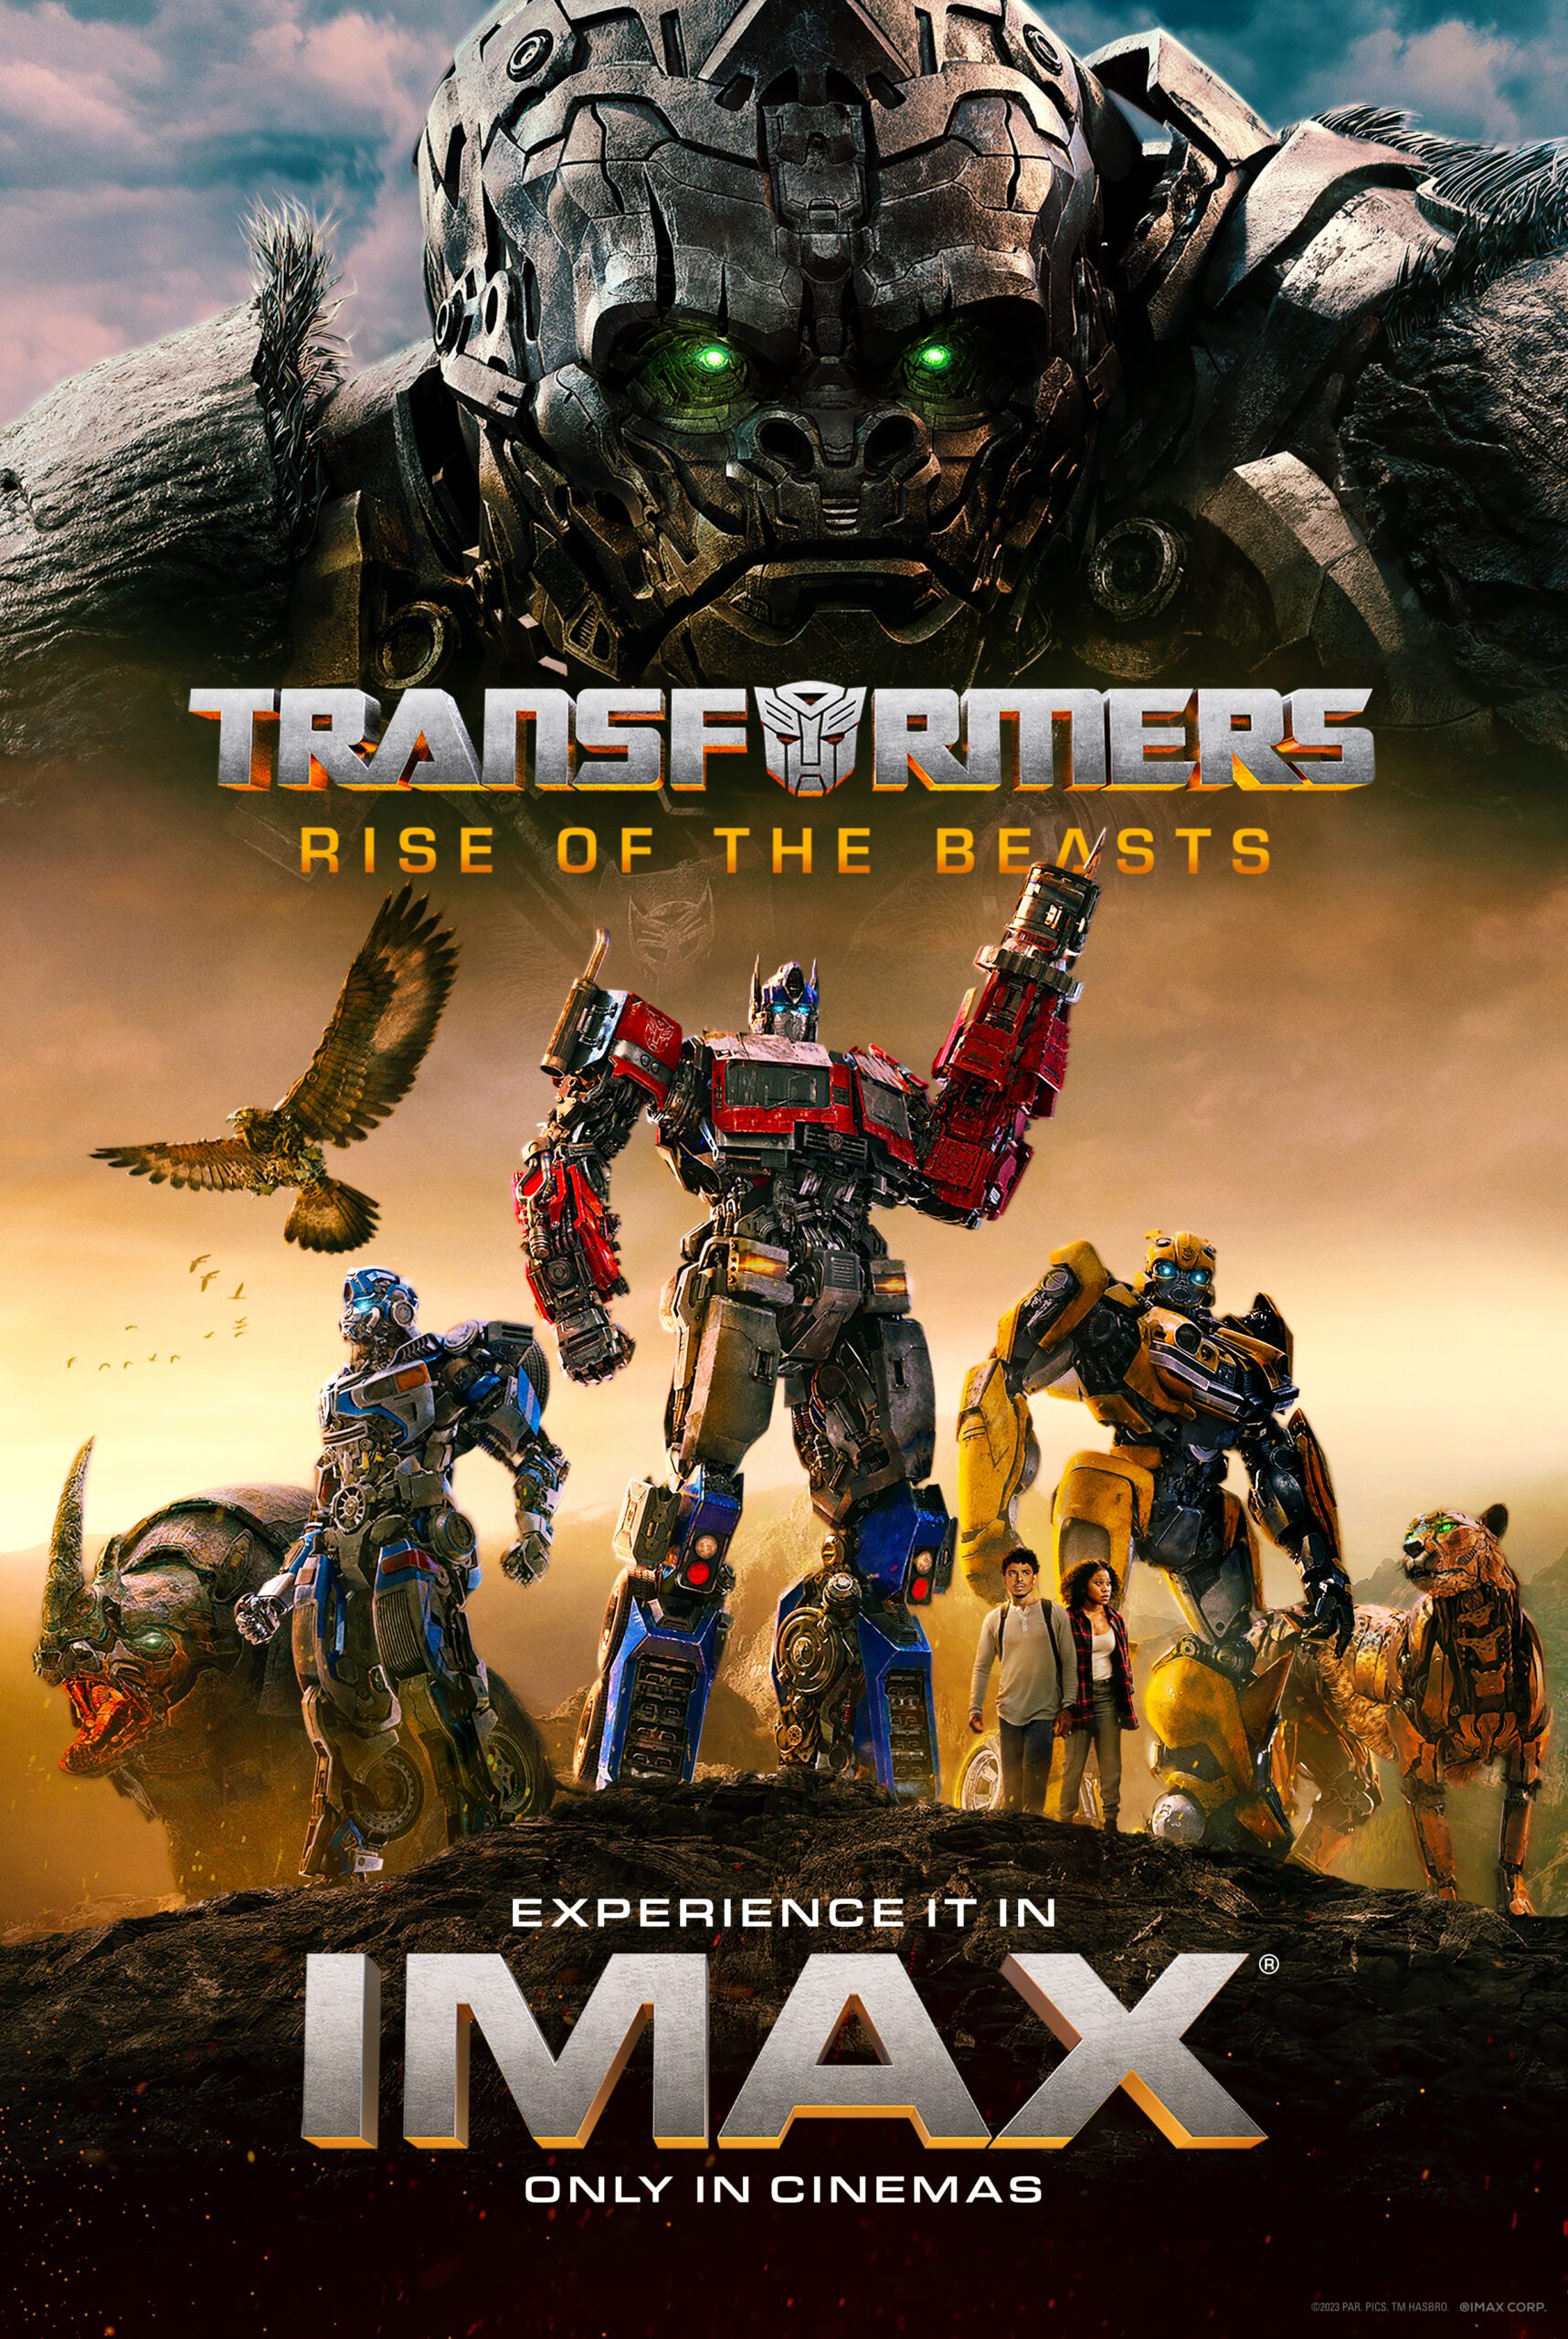 Κέρδισε διπλές προσκλήσεις για την ταινια Transformers : Rise of the beasts στο Cineplexx Θεσσαλονίκης